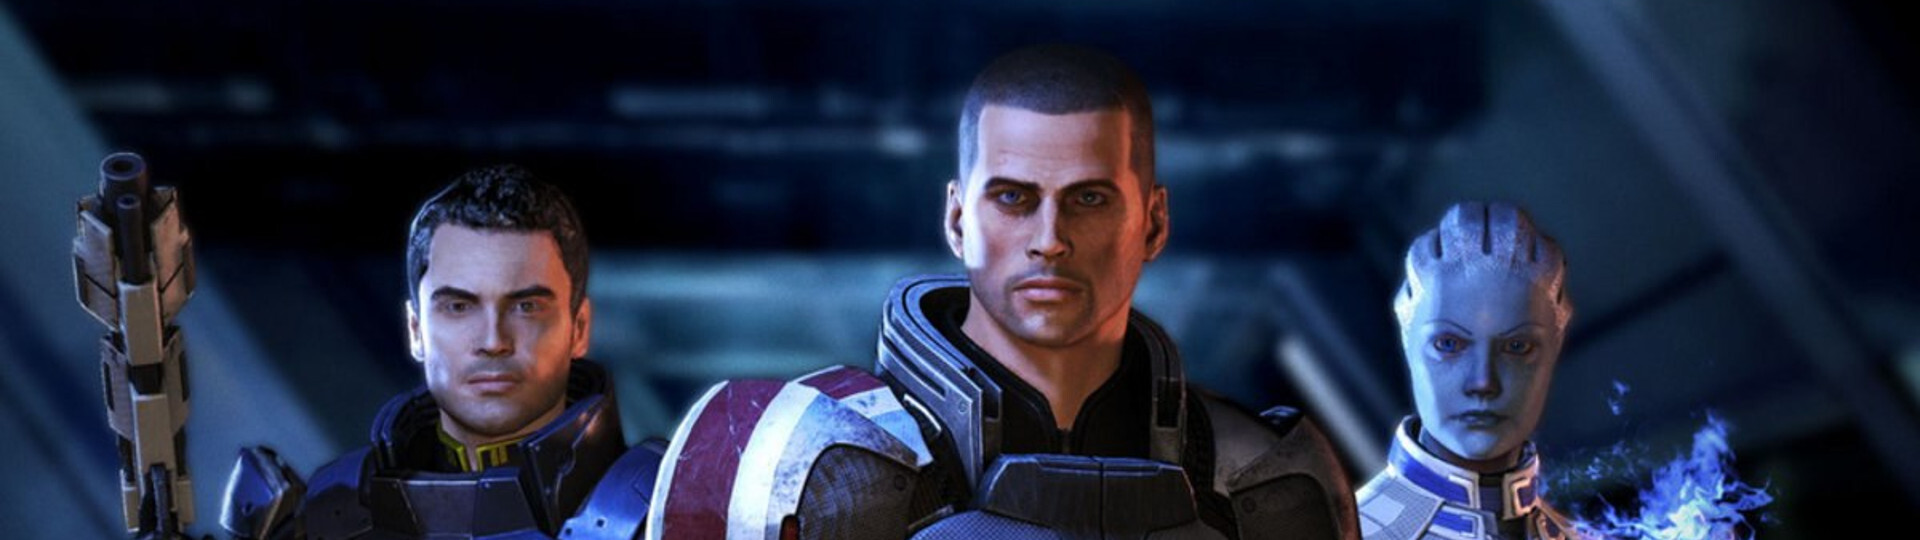 Mass Effect Legendary Edition je dokončen | Novinky